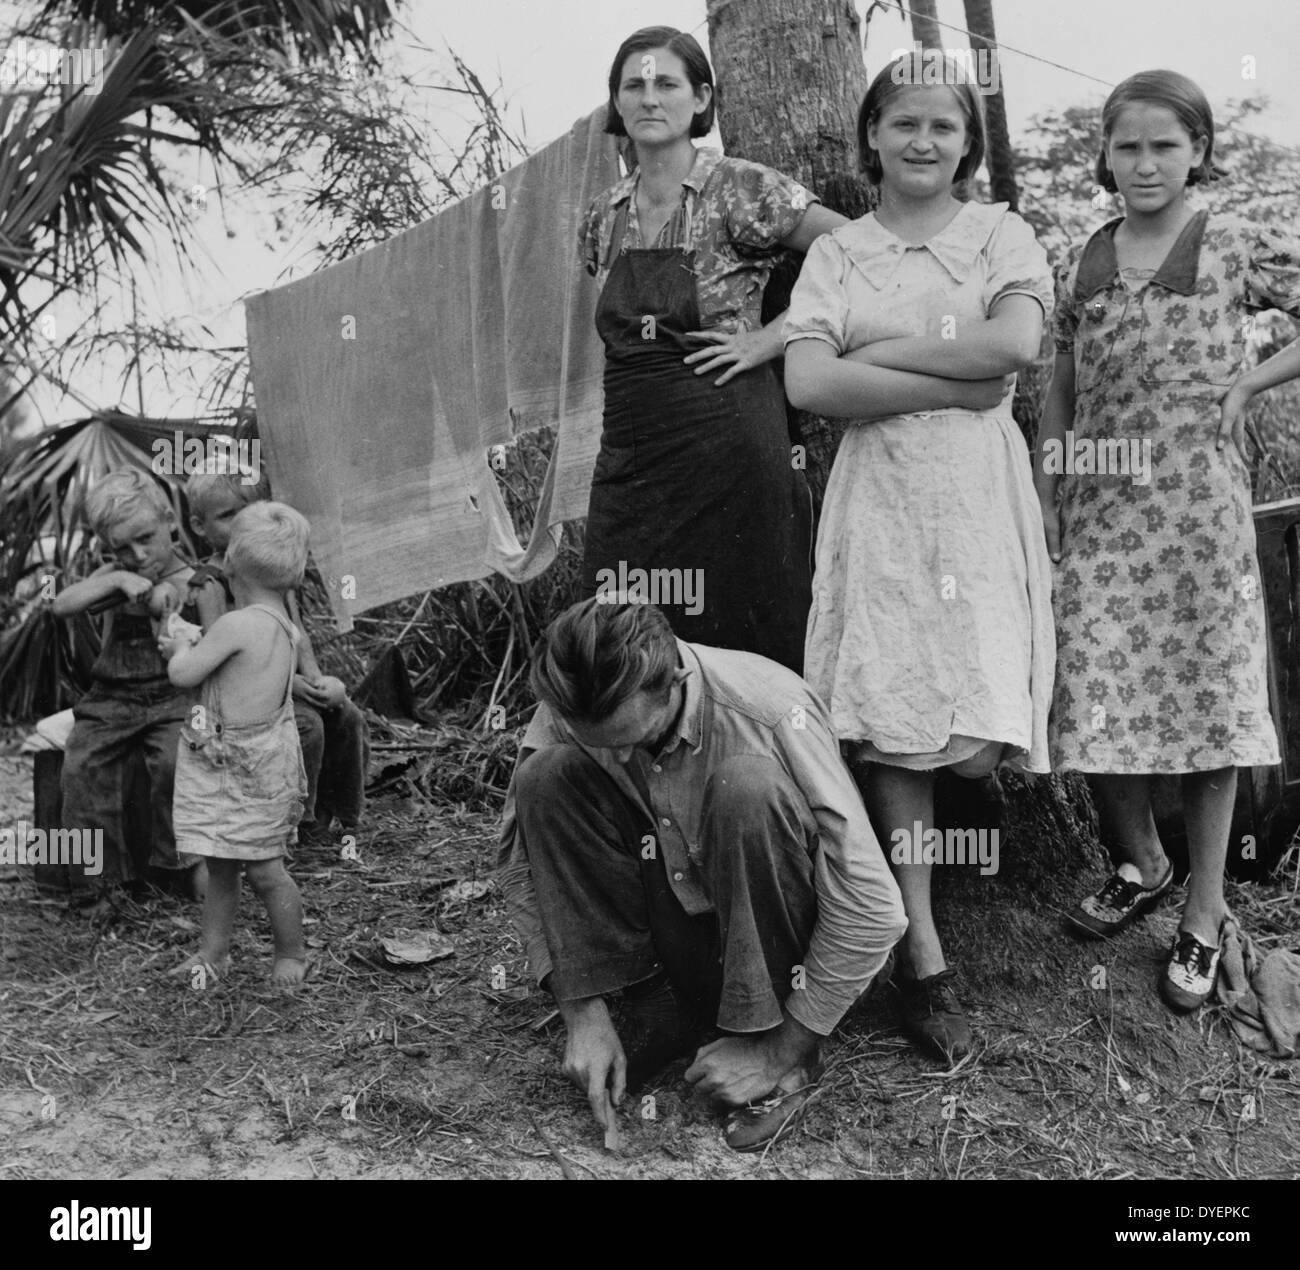 Zugewanderten Arbeiter Familie, Haus Arbeiter packen. Kanal-Punkt, Florida von Marion Post Wolcott, 1910-1990, Fotograf 19390101 Stockfoto